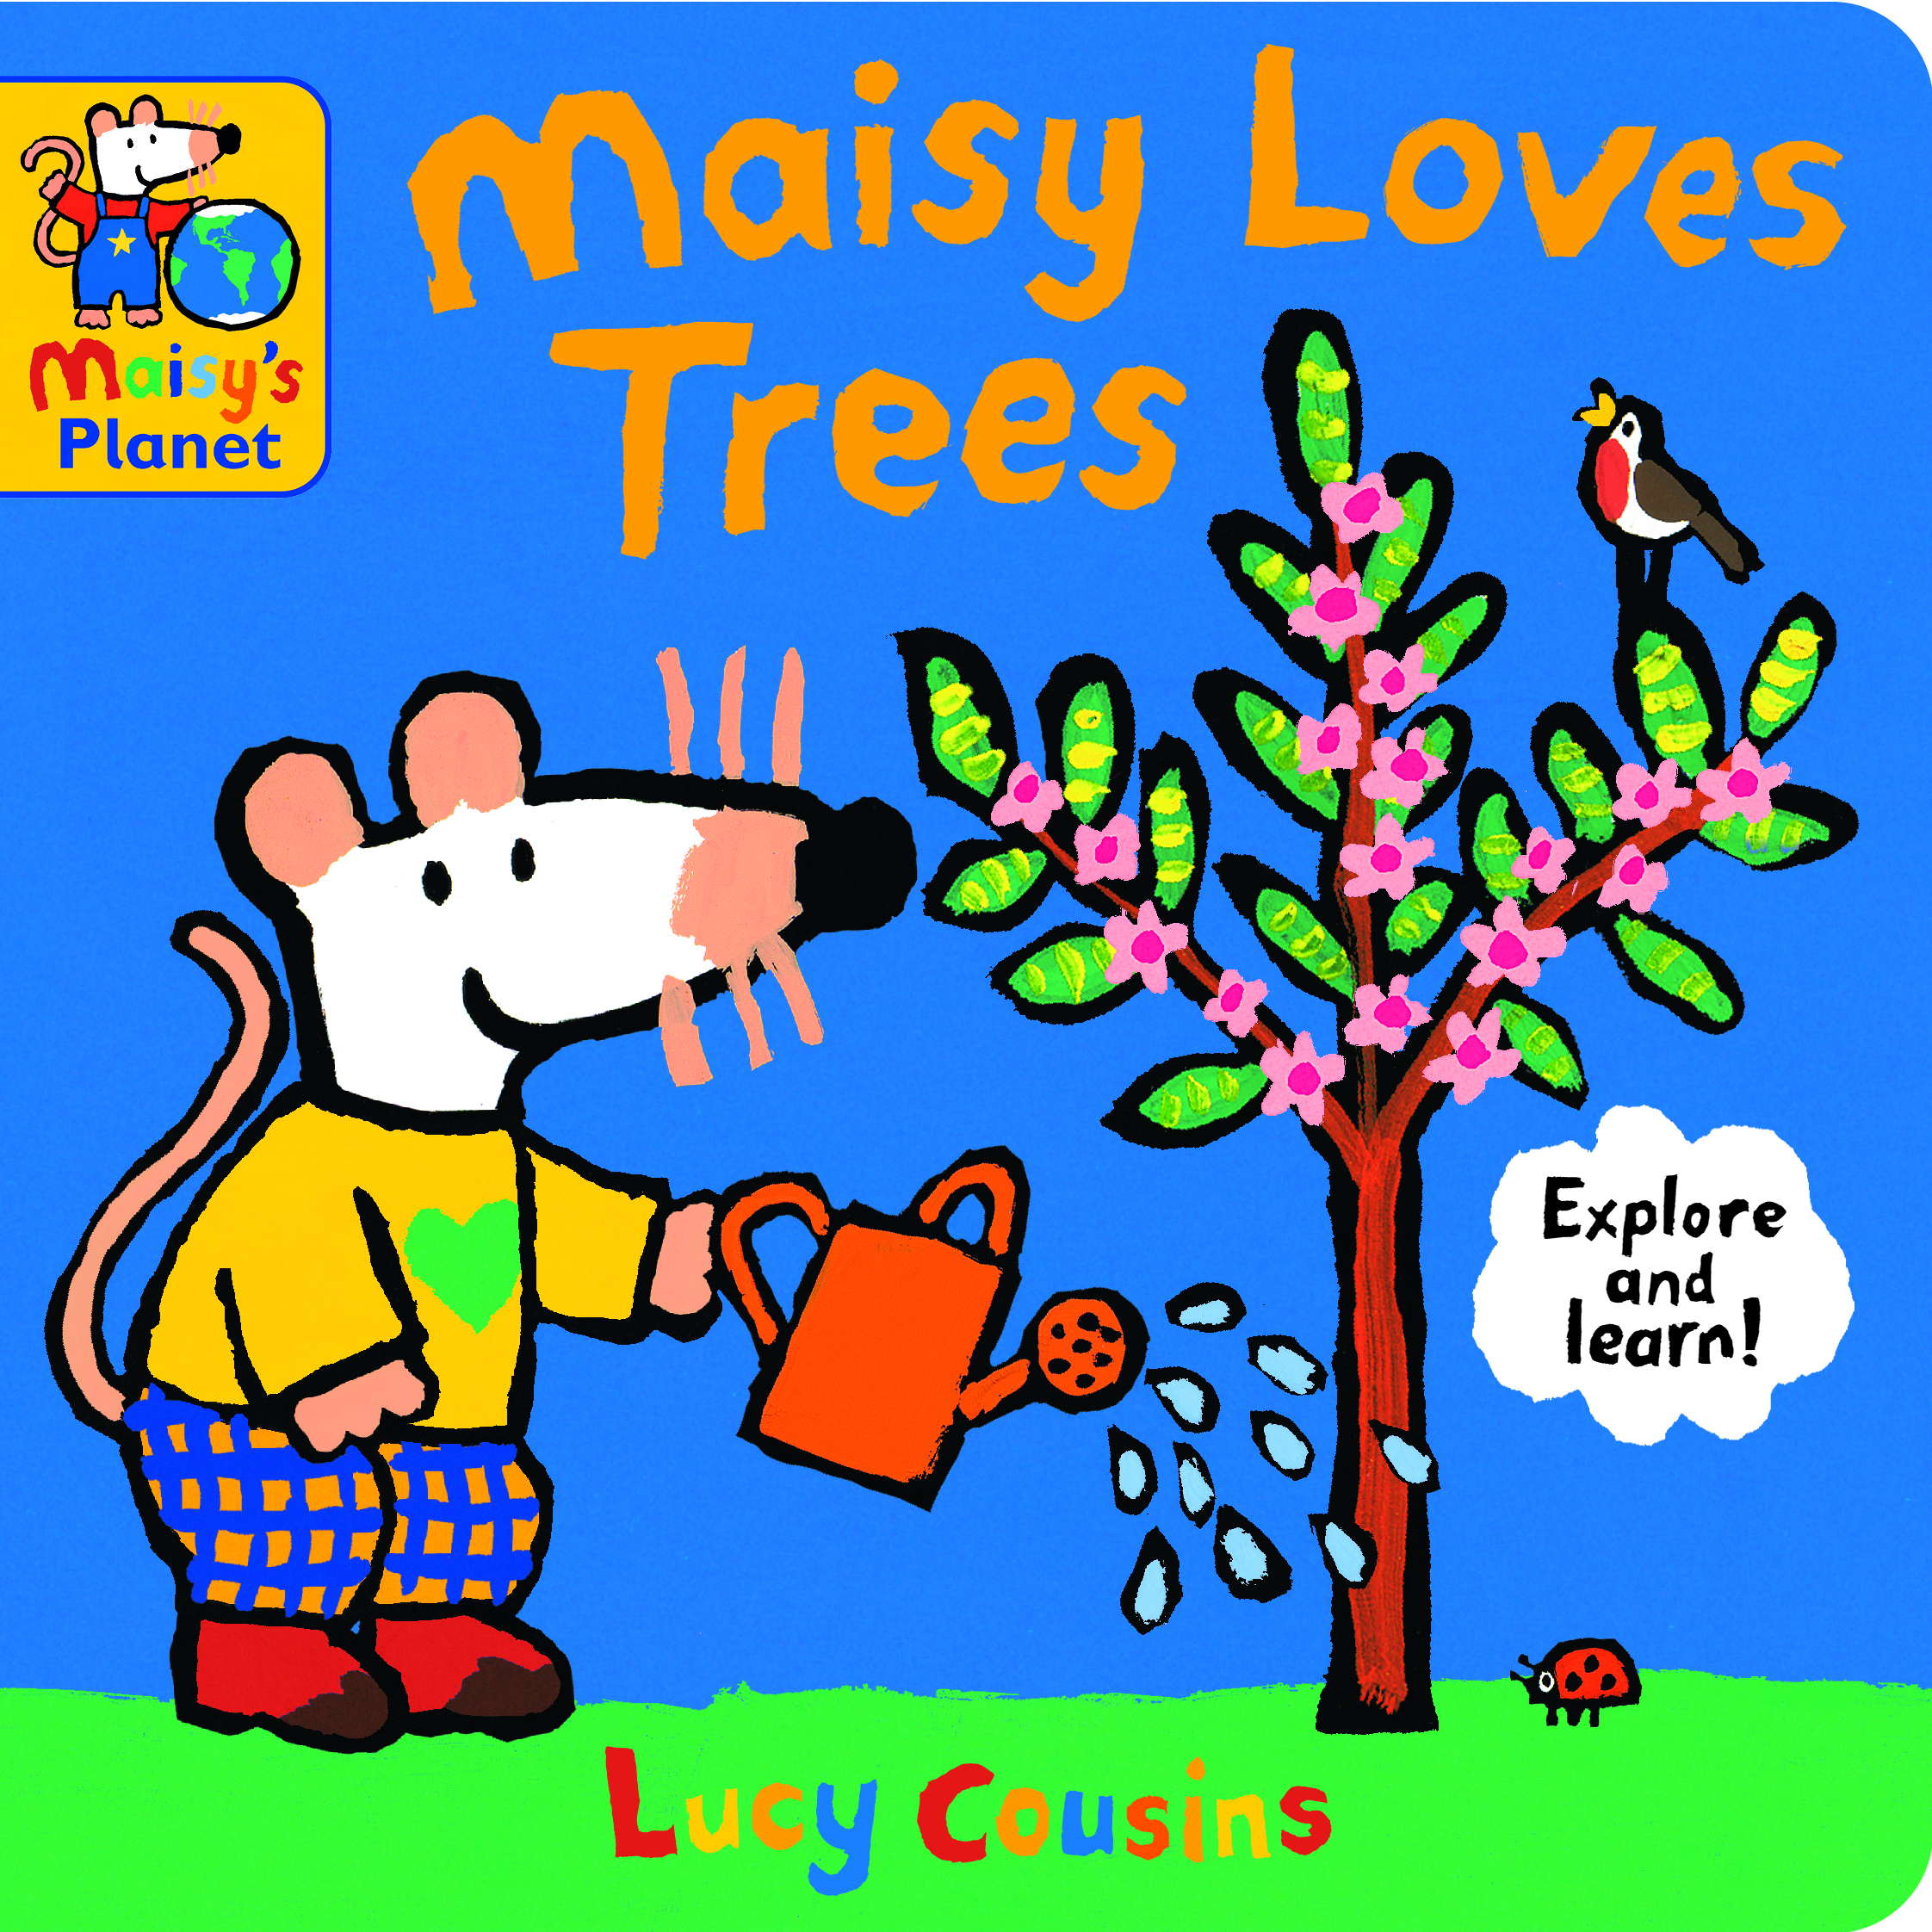 Maisy-Loves-Trees-A-Maisy-s-Planet-Book